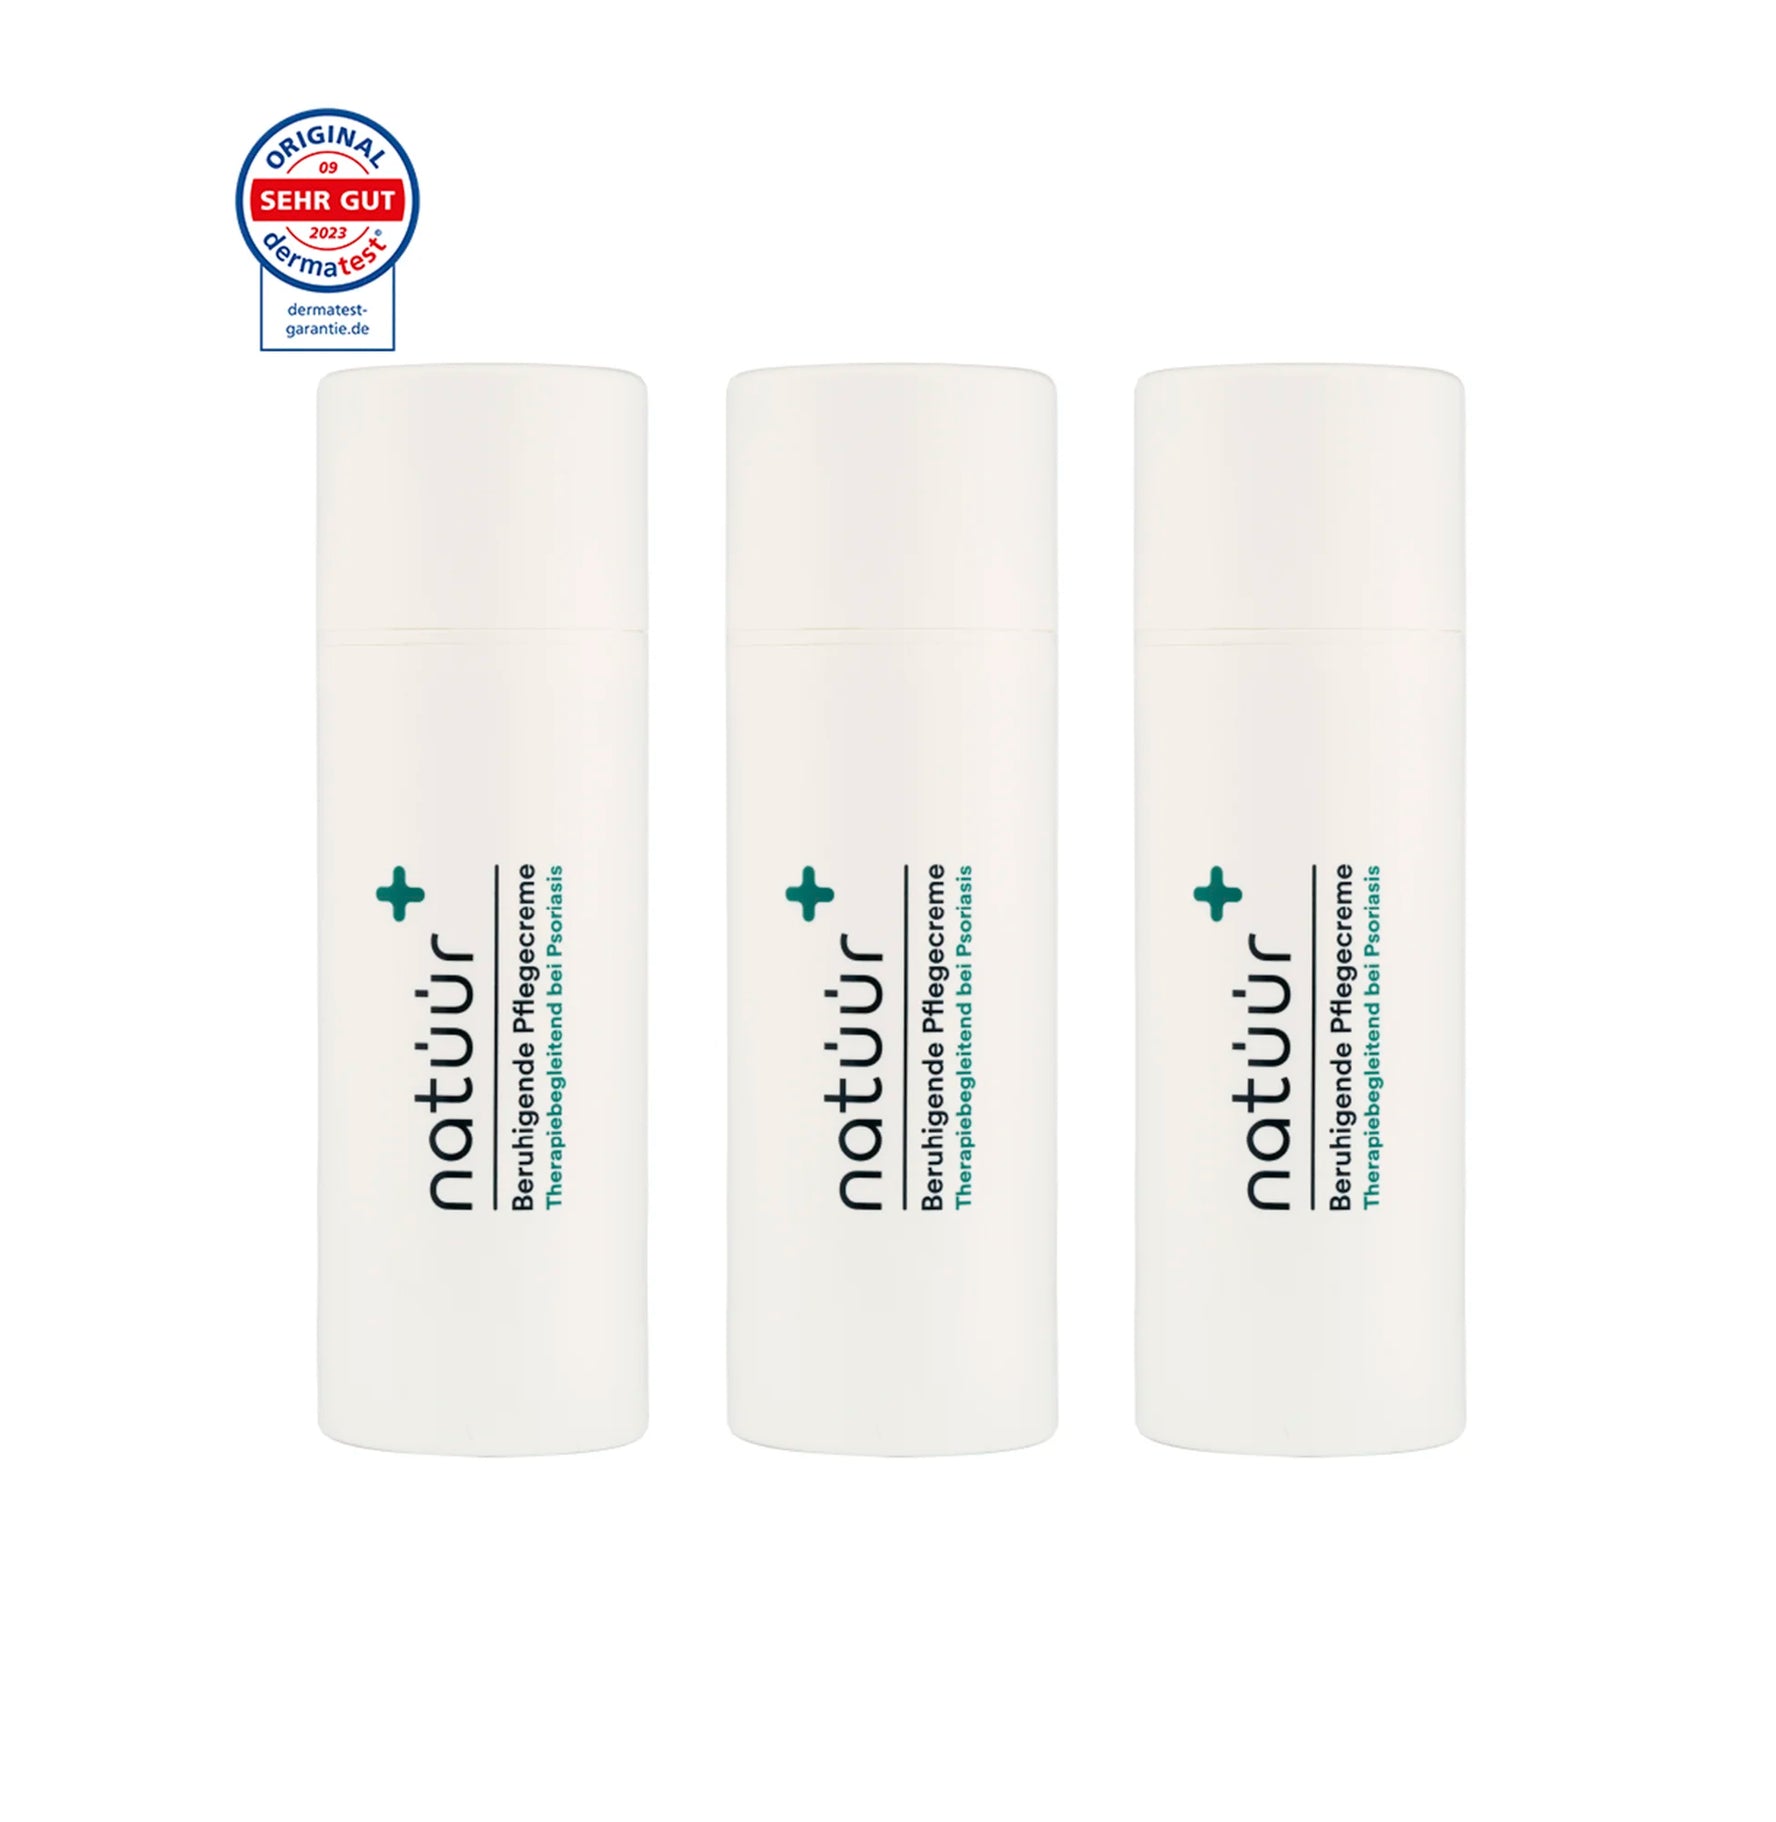 Das Pflegecreme Vorteils-Set der Marke natüür mit Psoriasis Körperpflege-Produkten. Die drei Cremen ist cylinderförmig abgebildet.